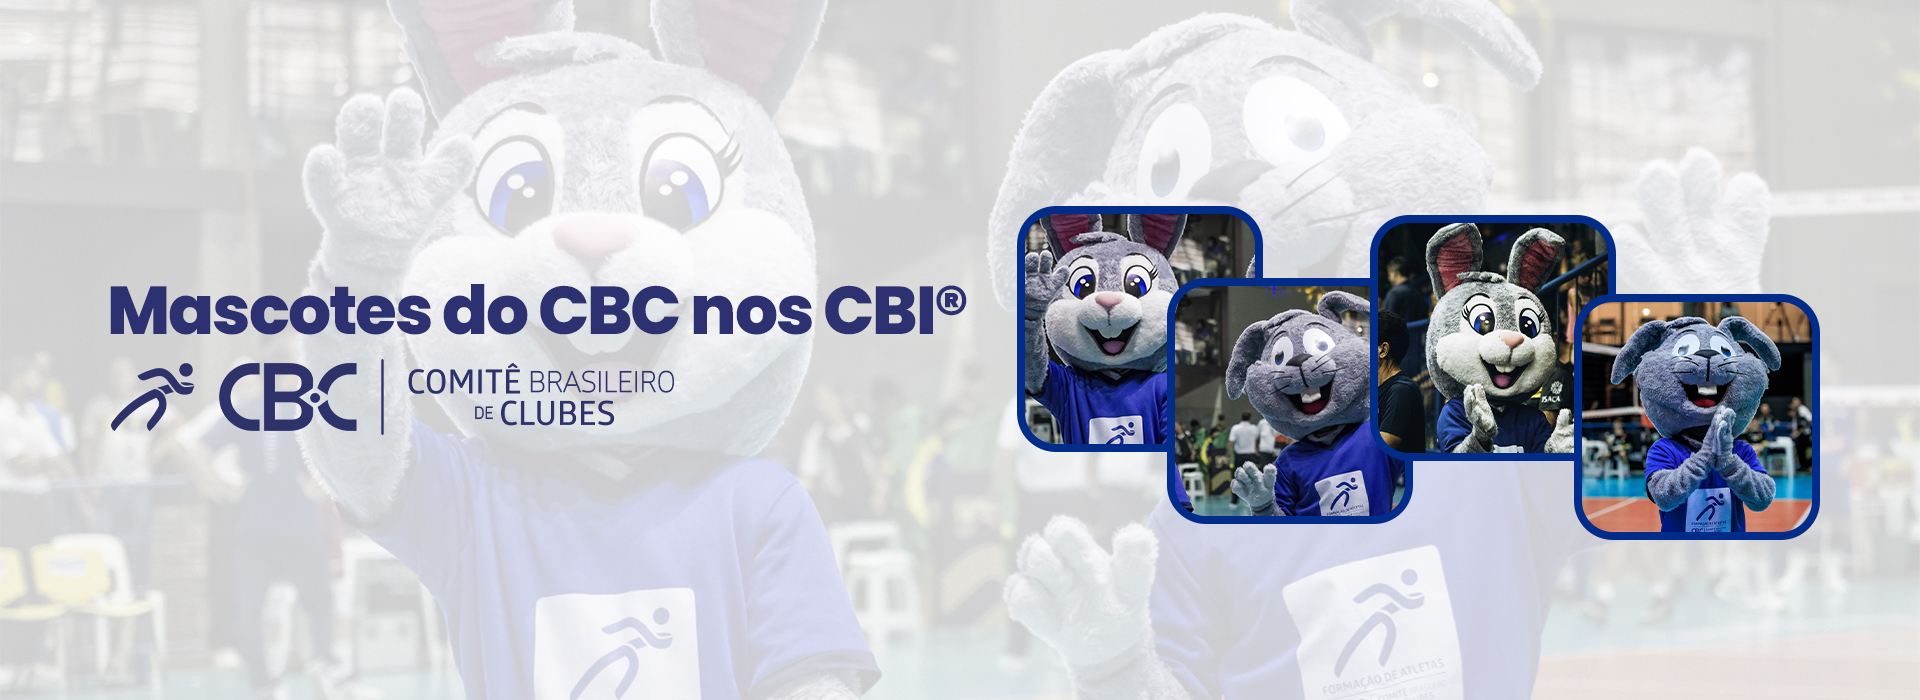 CBC divulga empresa parceira para fantasias das mascotes